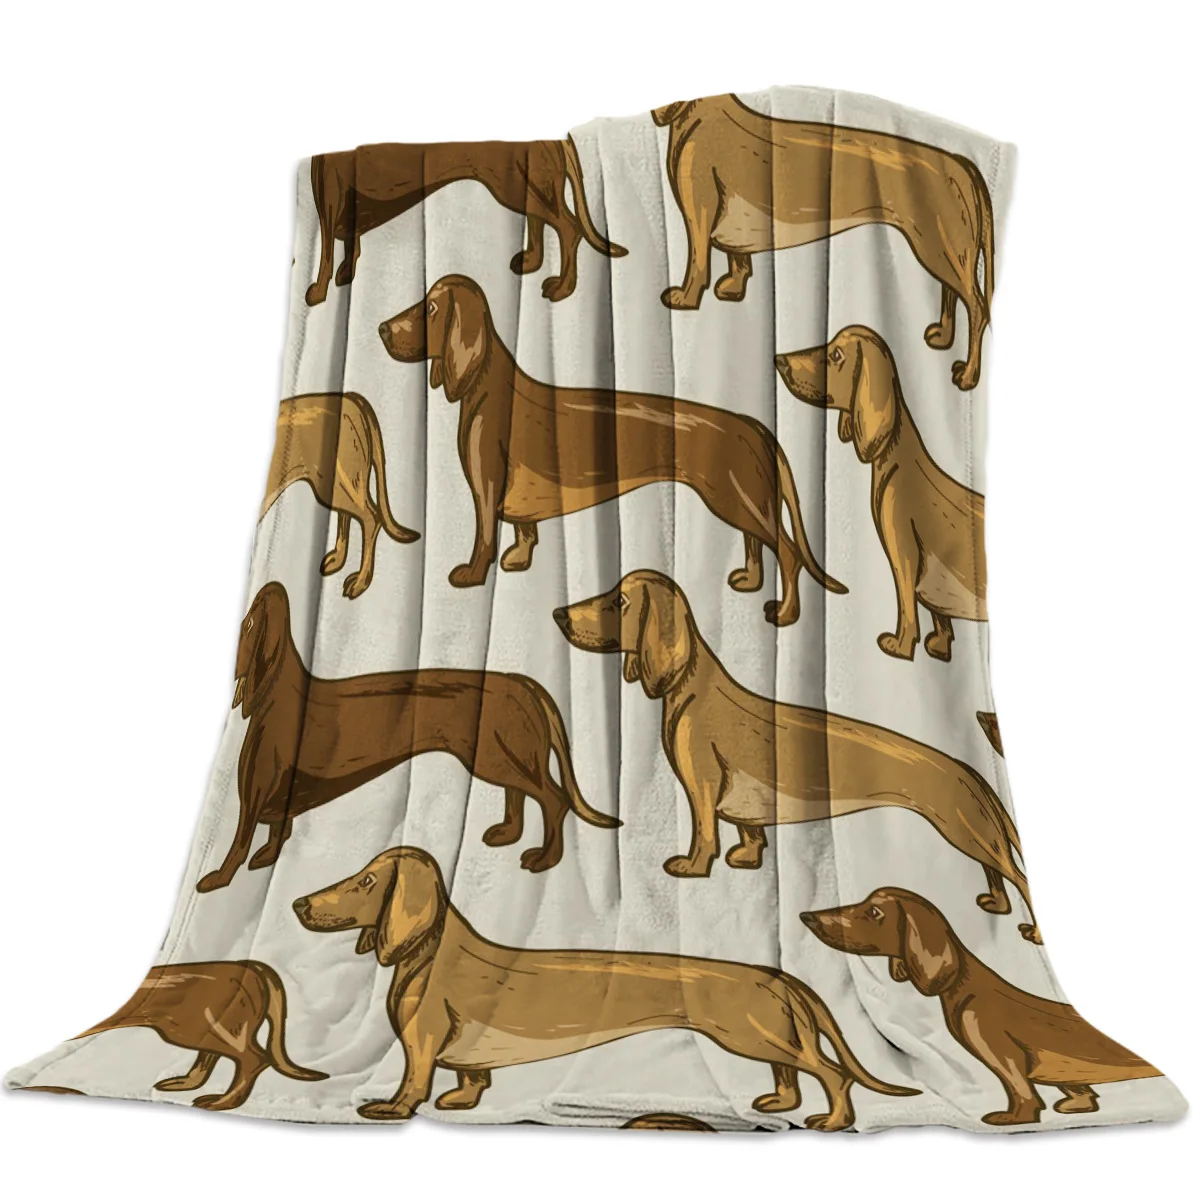 

Cartoon Animal Dachshund Dog Print Blanket Flannel Fluffy Soft Cozy Warm Throw All Seasons Sofa Nap Cover Bedspread Bed Blankets